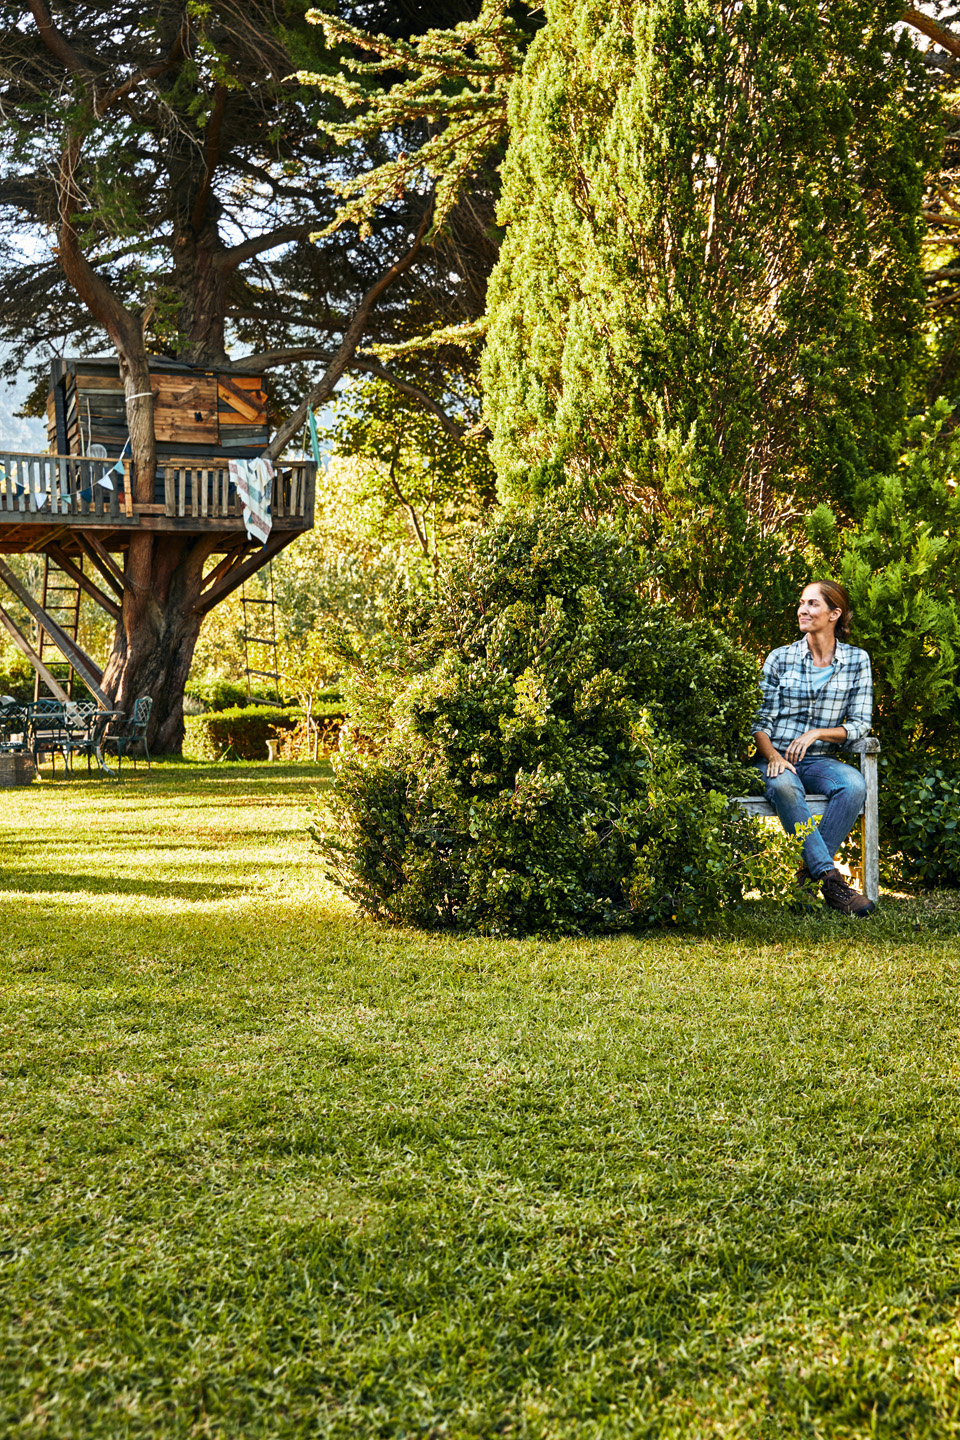 Una mujer está sentada en un banco en un jardín con arbustos y césped, con una casa de árbol en el fondo